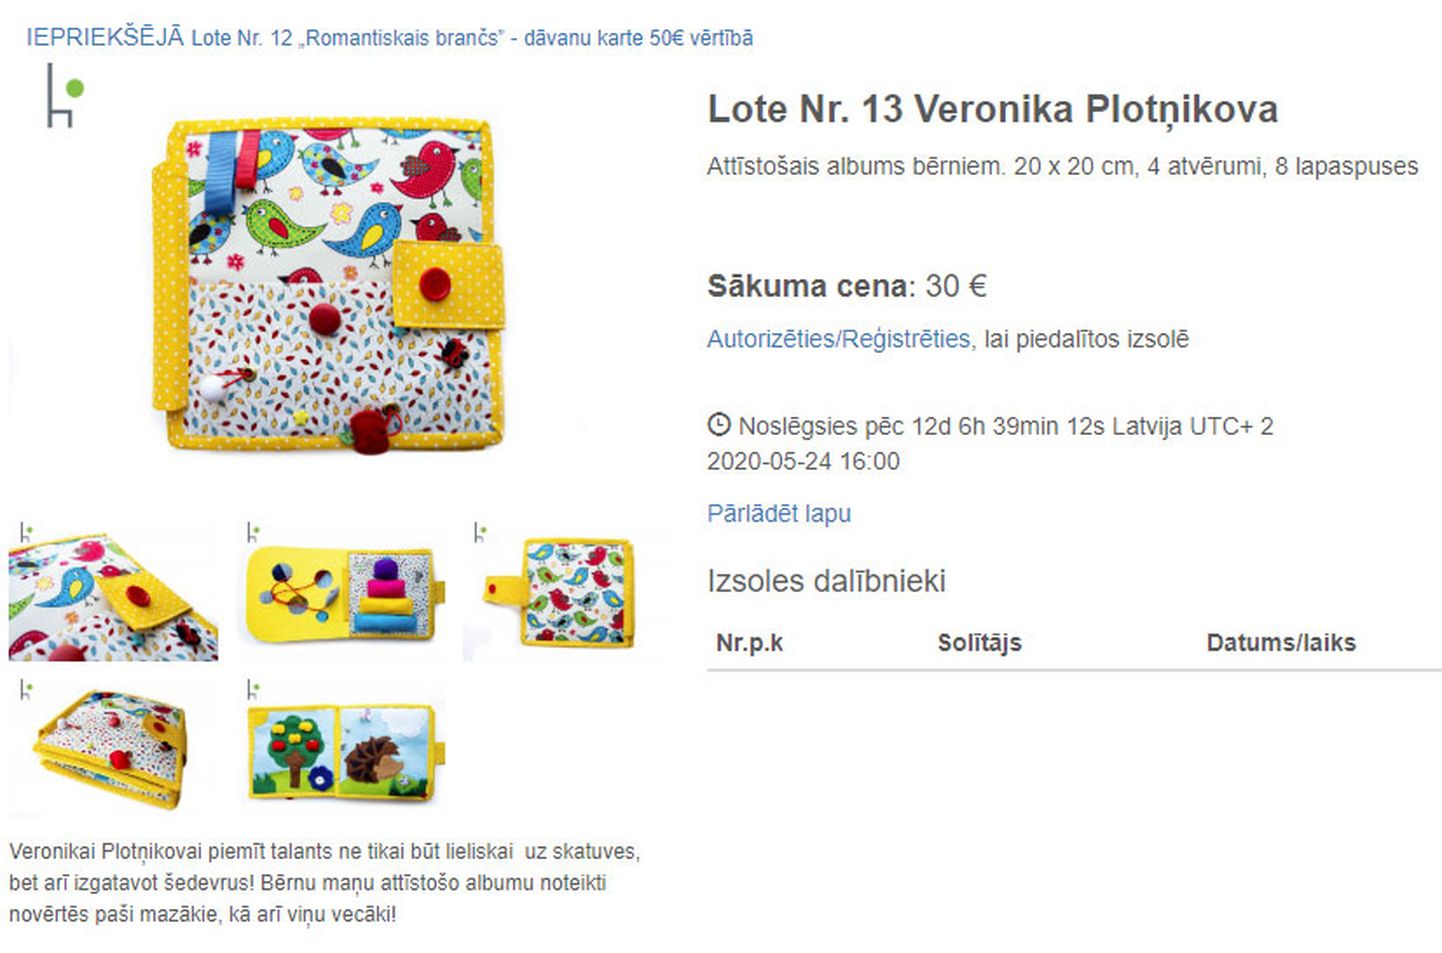 Lote Nr. 13 Veronika Plotņikova
Attīstošais albums bērniem. 20 x 20 cm, 4 atvērumi, 8 lapaspuses 